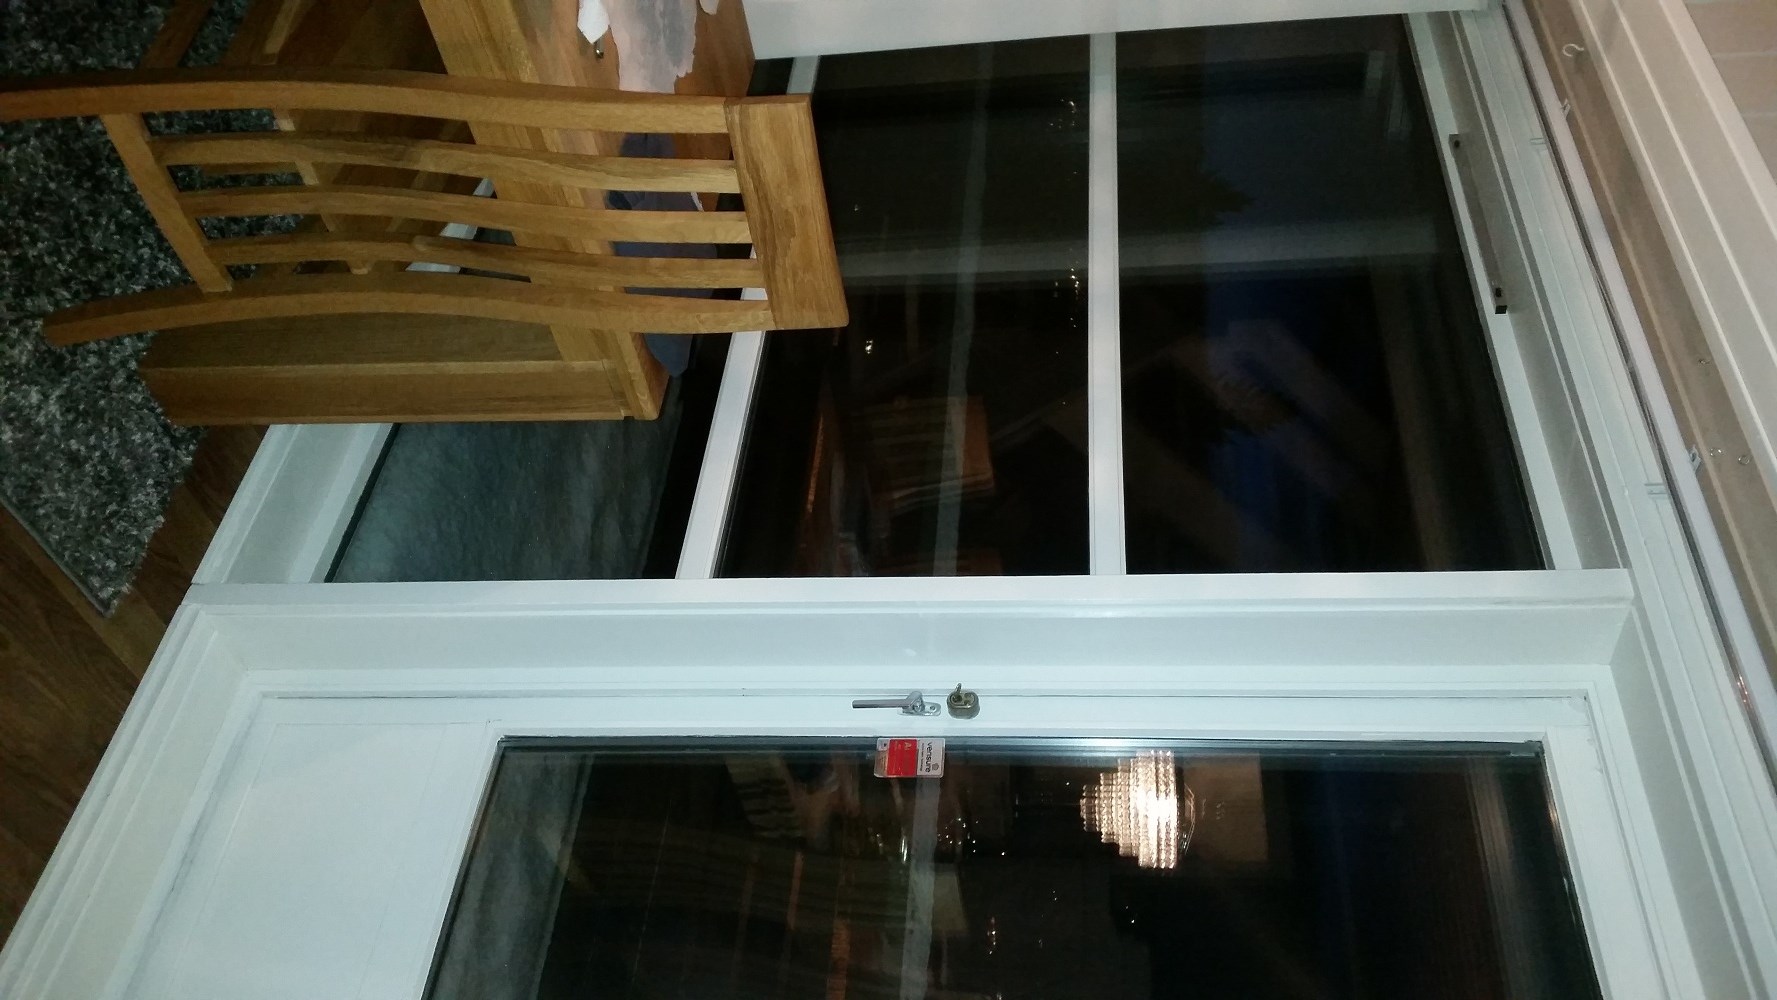 Trekk fra verandadør og vinduer i hus fra 1984 - forslag til forbedring - 2015-01-13 17.03.30.jpg - SteinarAngel